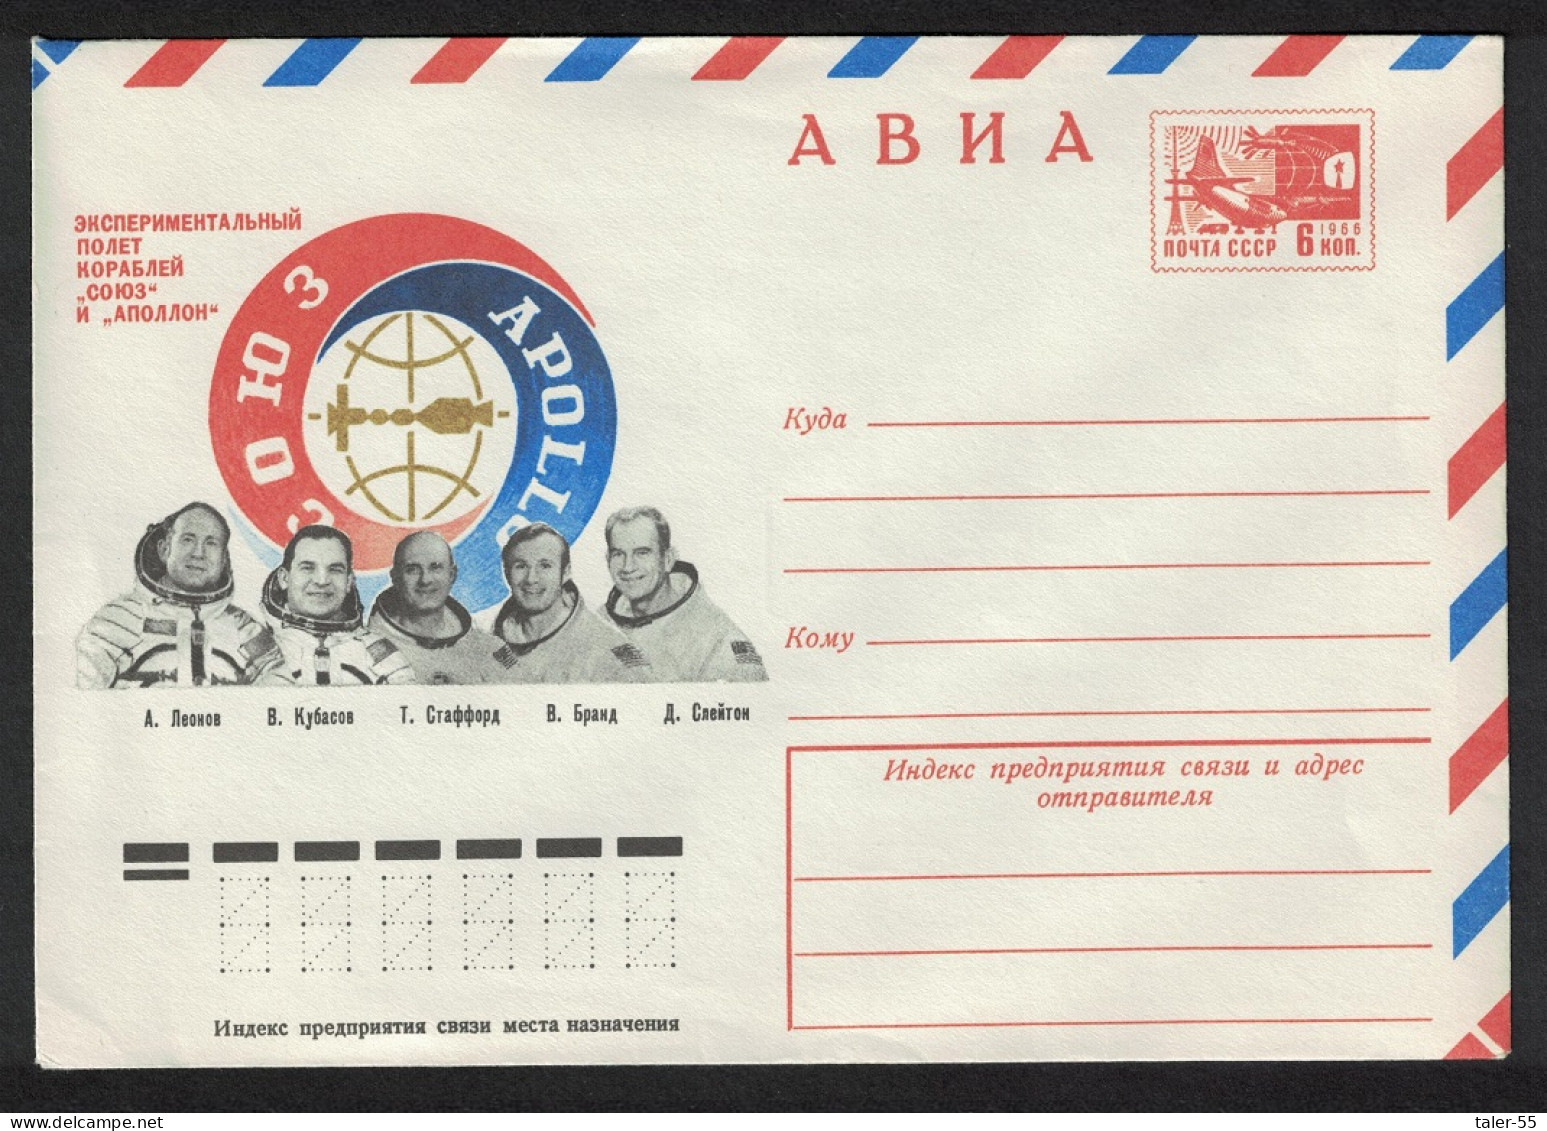 USSR Soyuz Apollo Space Flight Crews Pre-paid Envelope 1975 - Usati